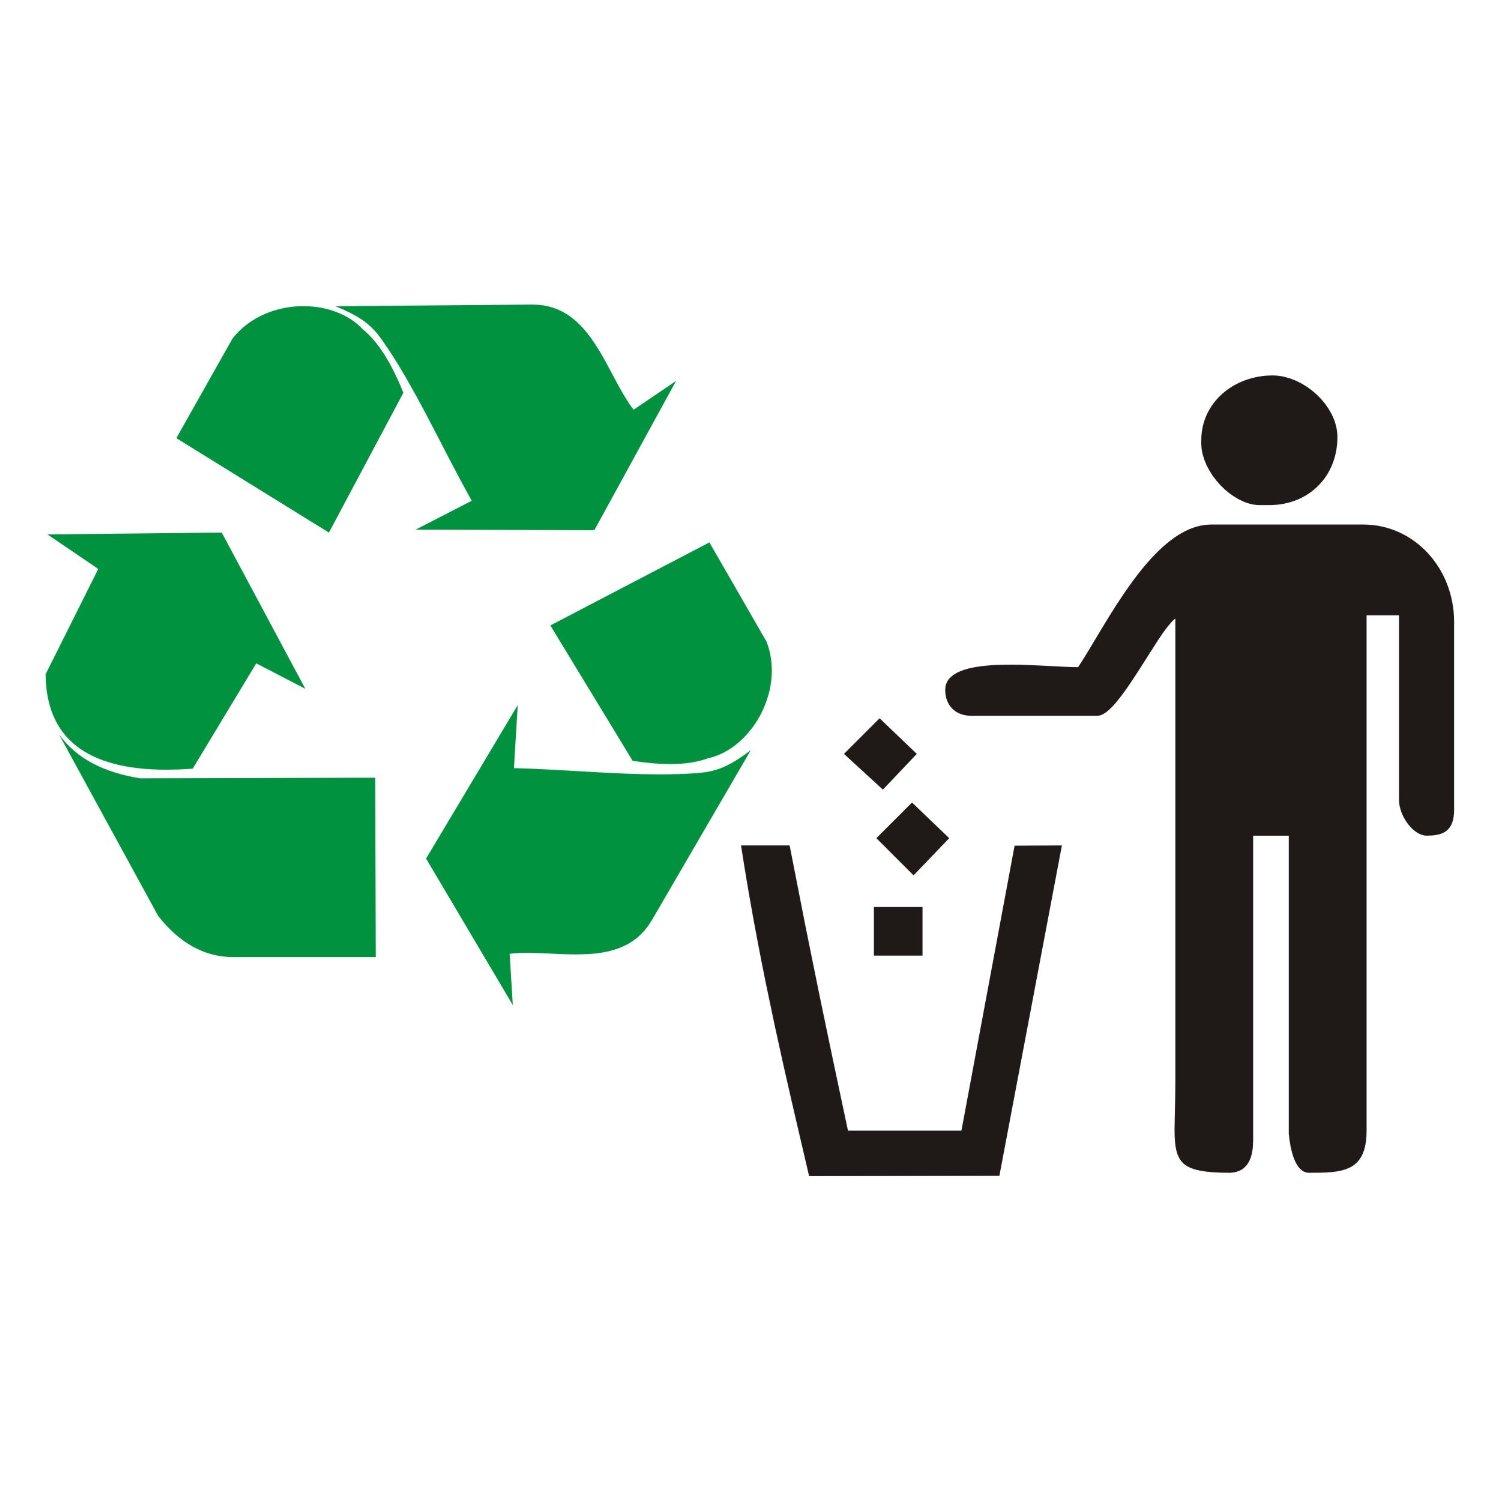 Хотеть переработка. Значок переработки. Логотип утилизации отходов. Логотип вторичной переработки.